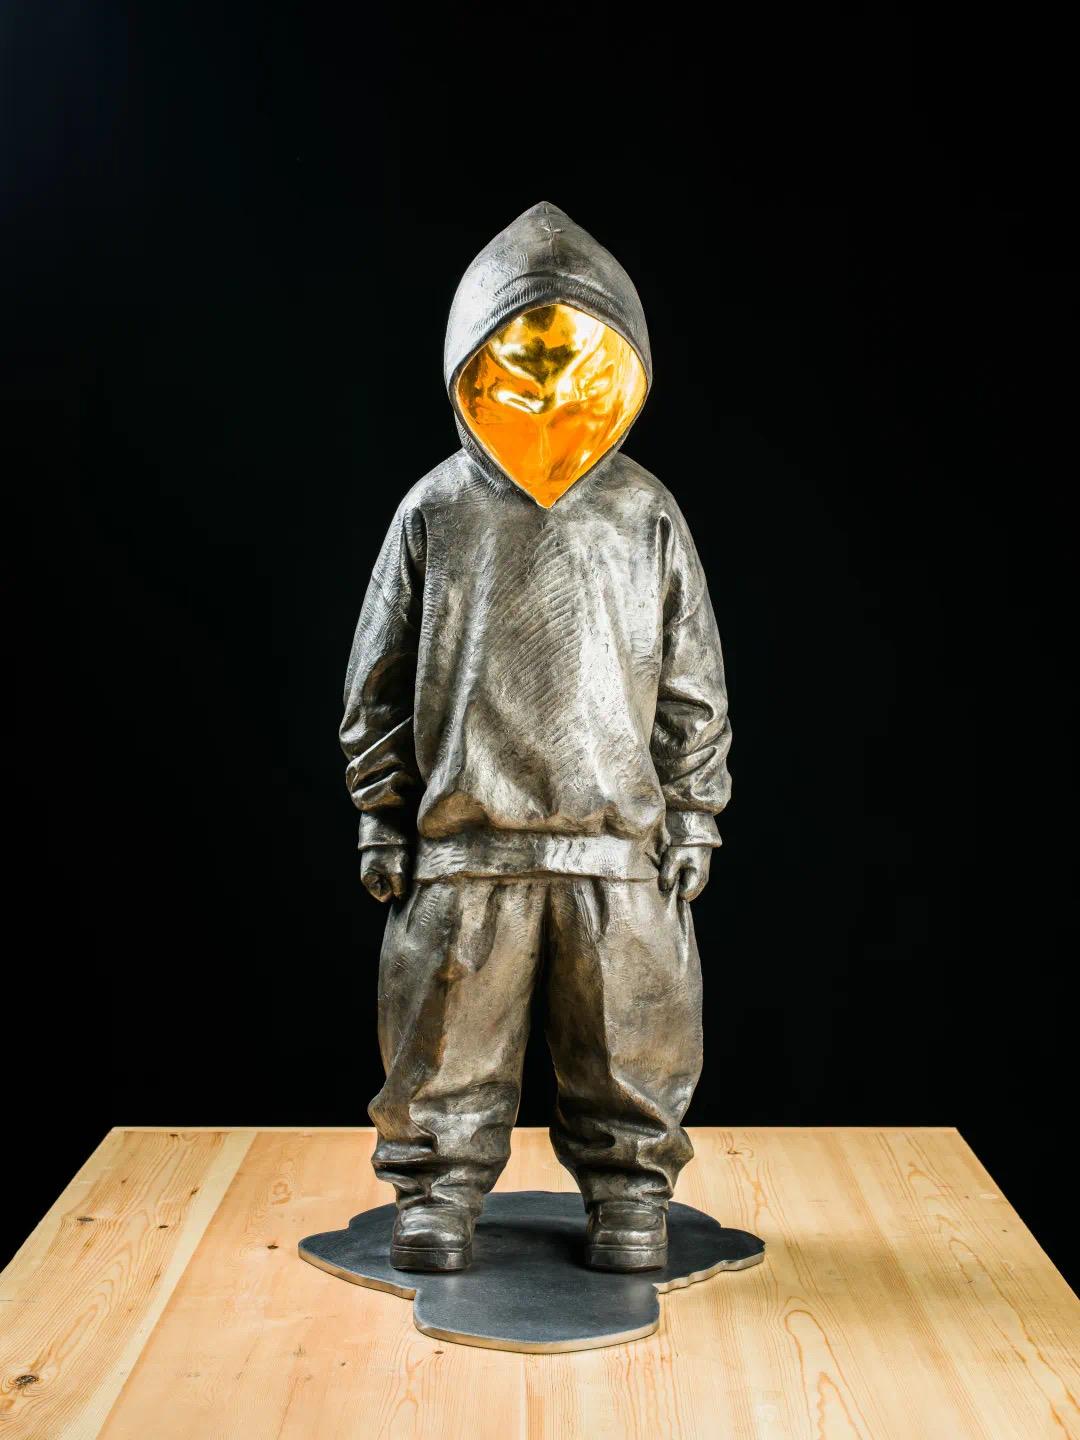 "Spottdrossel" Skulptur 42,5" x 19" x 18,5" Zoll Edition 3/8 von Huang Yulong

Bronze-Skulptur

ÜBER DEN KÜNSTLER
Huang Yulong wurde 1983 in der Provinz Anhui, China, geboren. Im Jahr 2007 schloss er sein Studium am Jingdezhen Ceramic Institute in